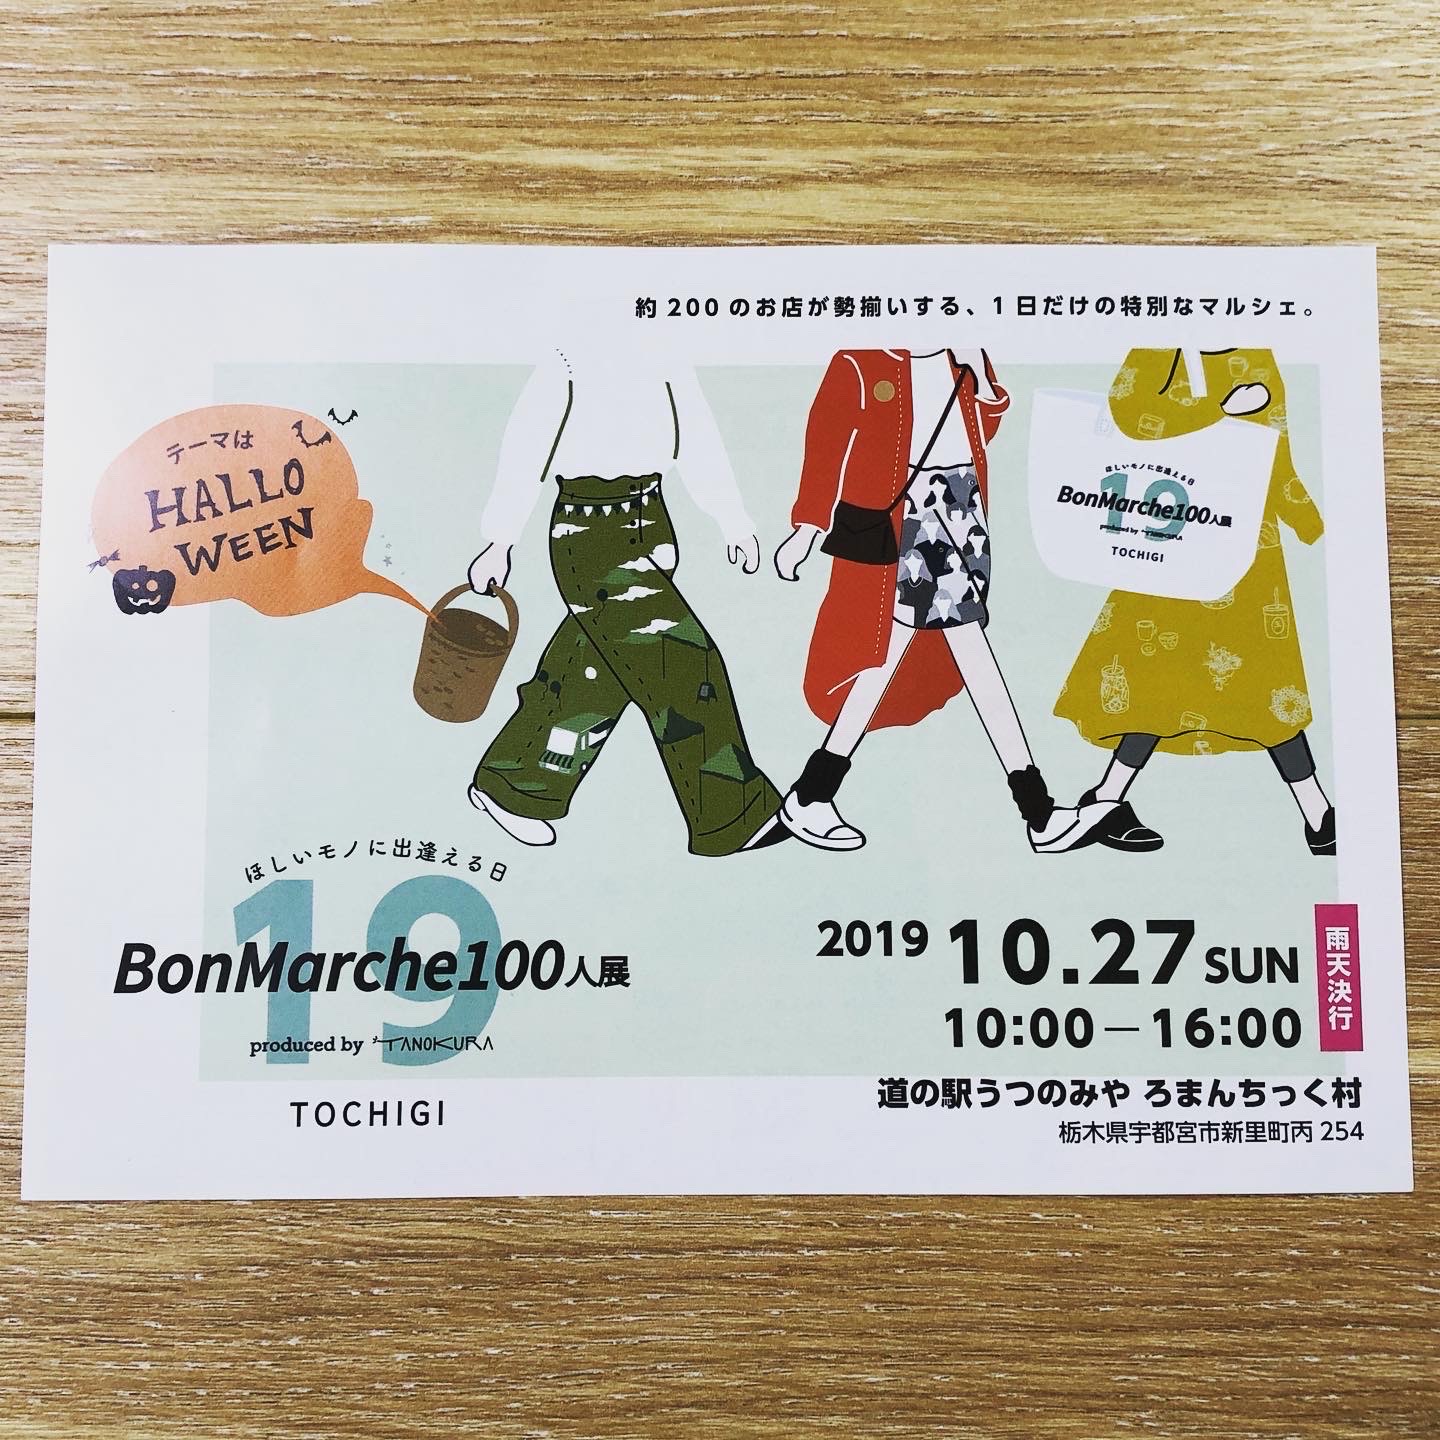 「BonMarche100人展in栃木」10月27日(日) 出店決定!!